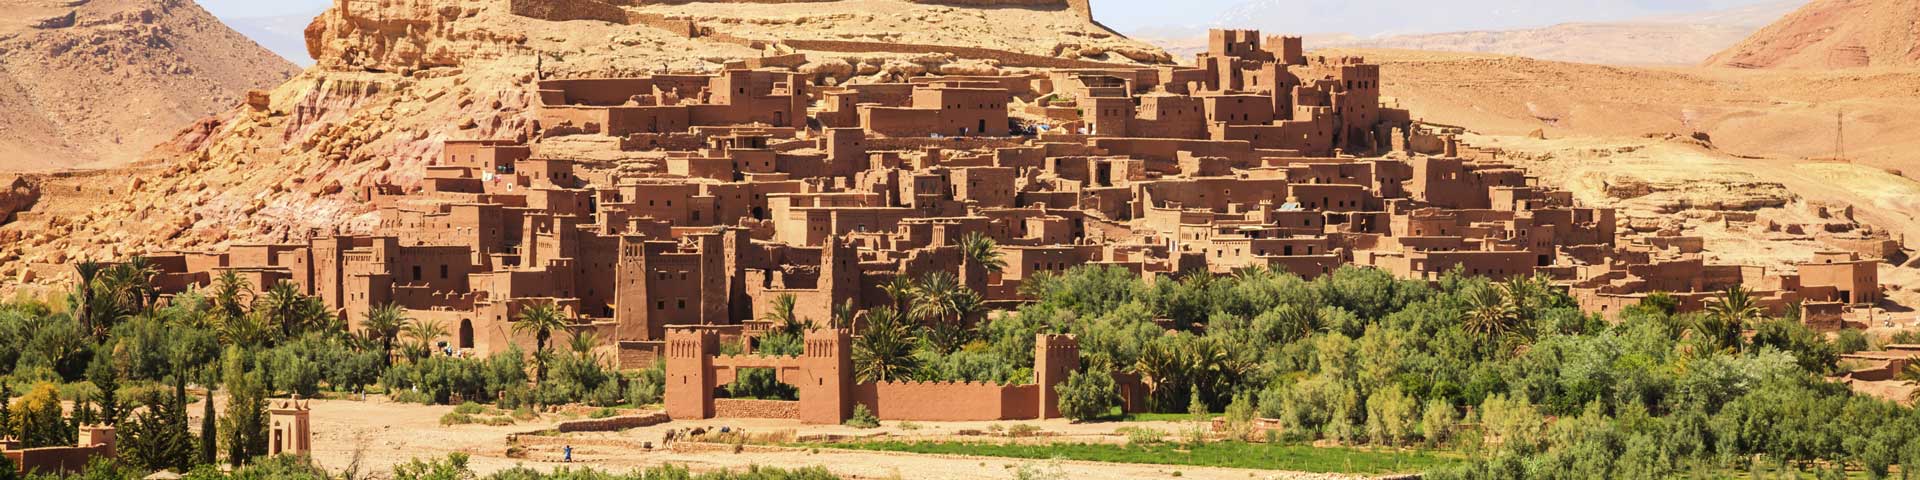 Essaouira Ouarzazate